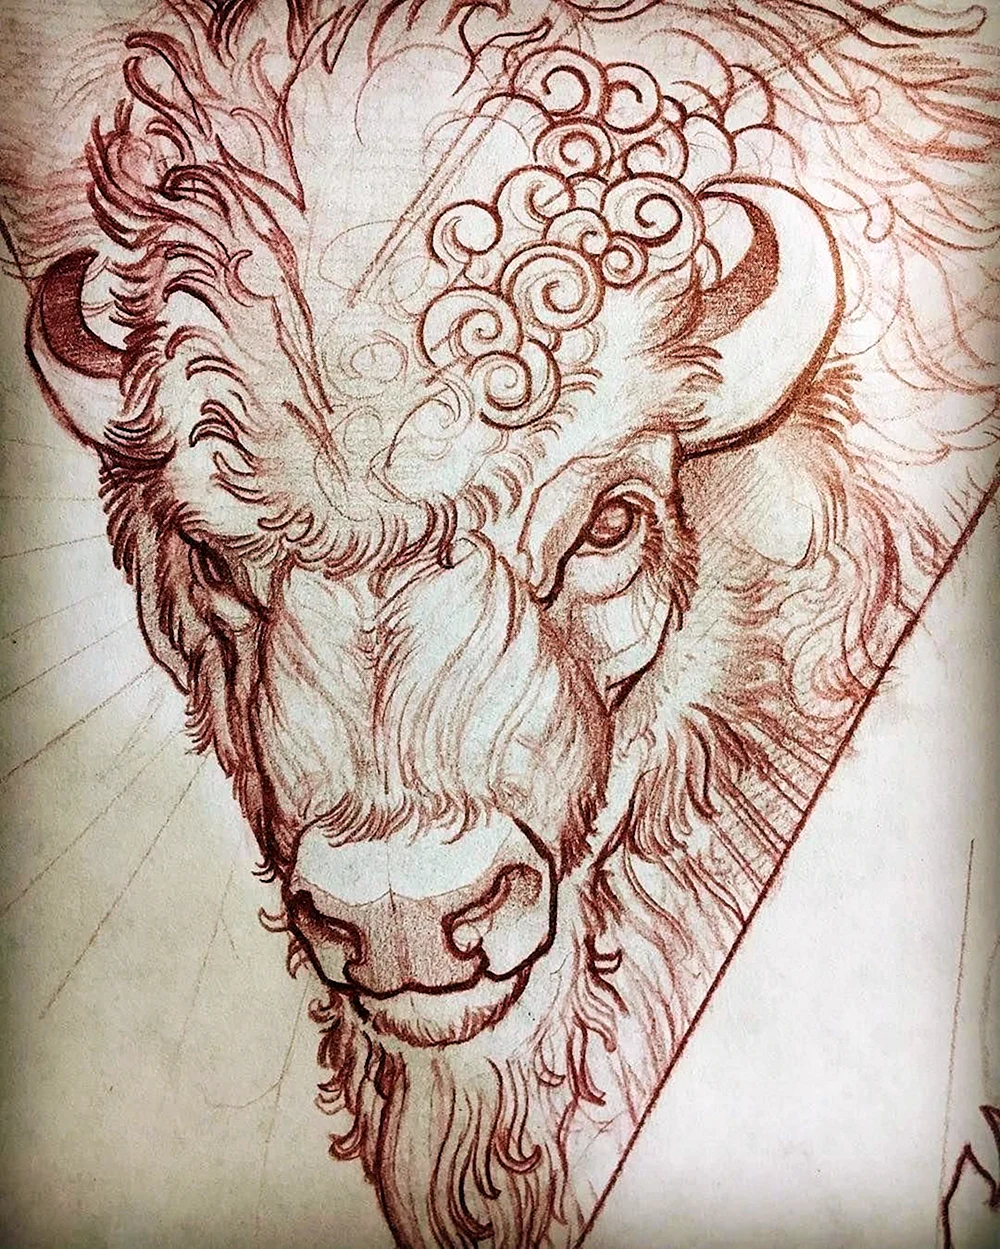 Bull head drawing